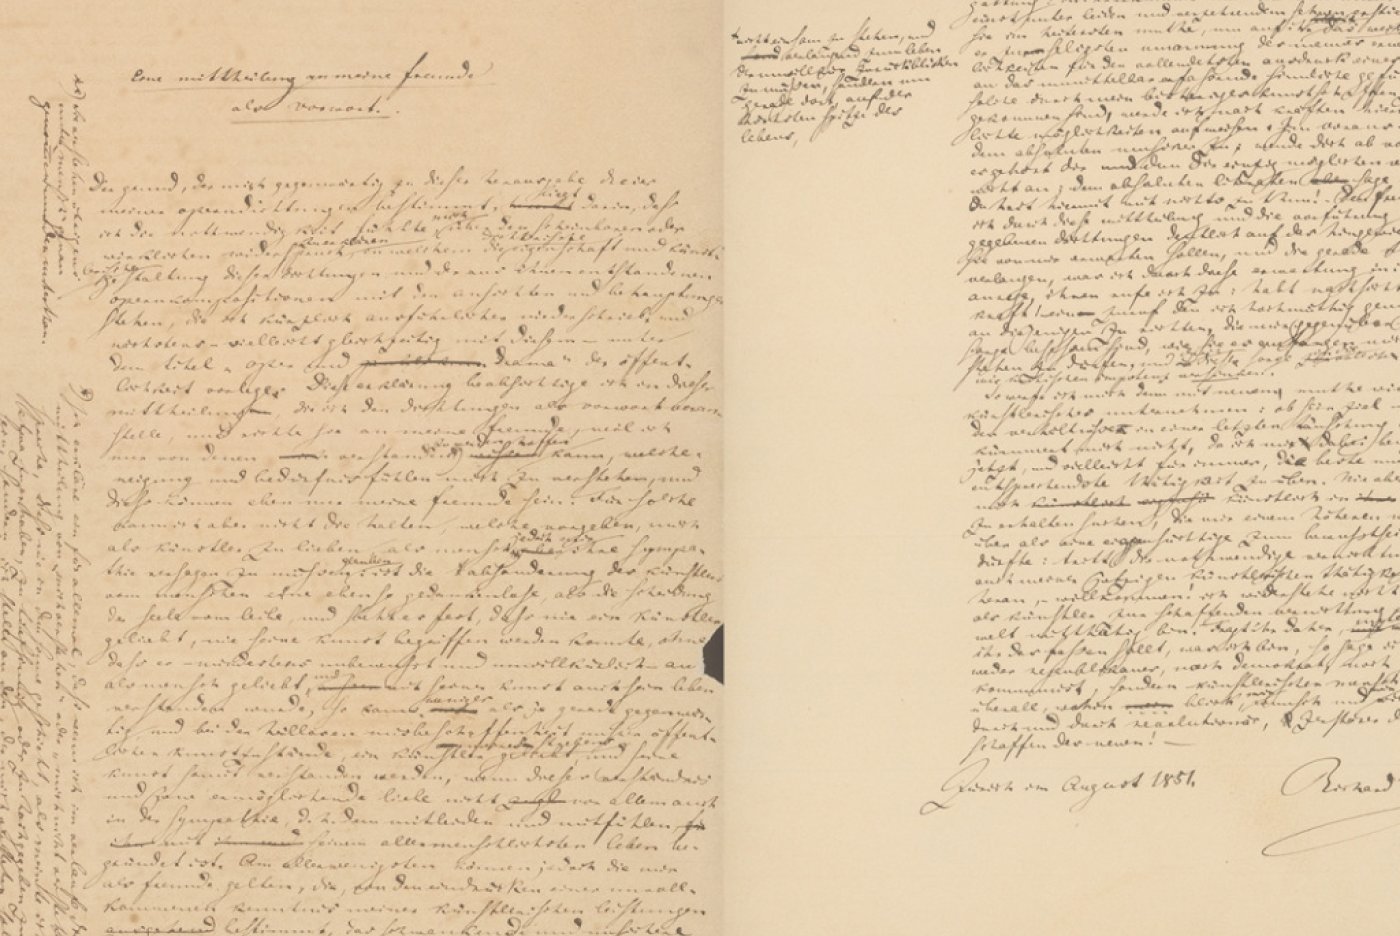 Le manuscrit "Eine Mitteilung an meine Freunde" a été rédigé par Richard Wagner en 1851 à Zurich. Zentralbibliothek Zurich.